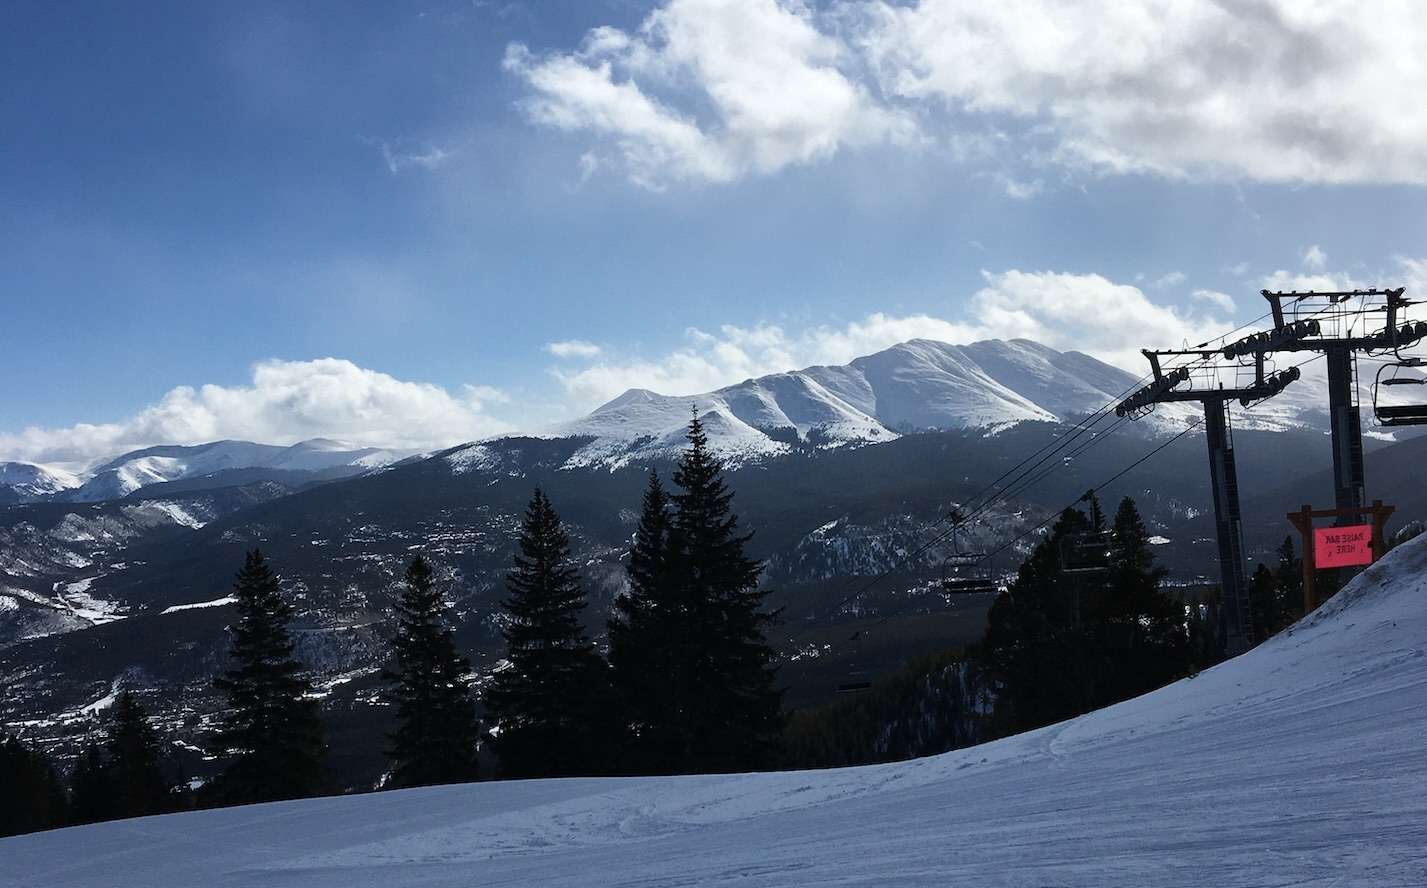 Unforgettable 3 day Skiing Vacation to Breckenridge Colorado